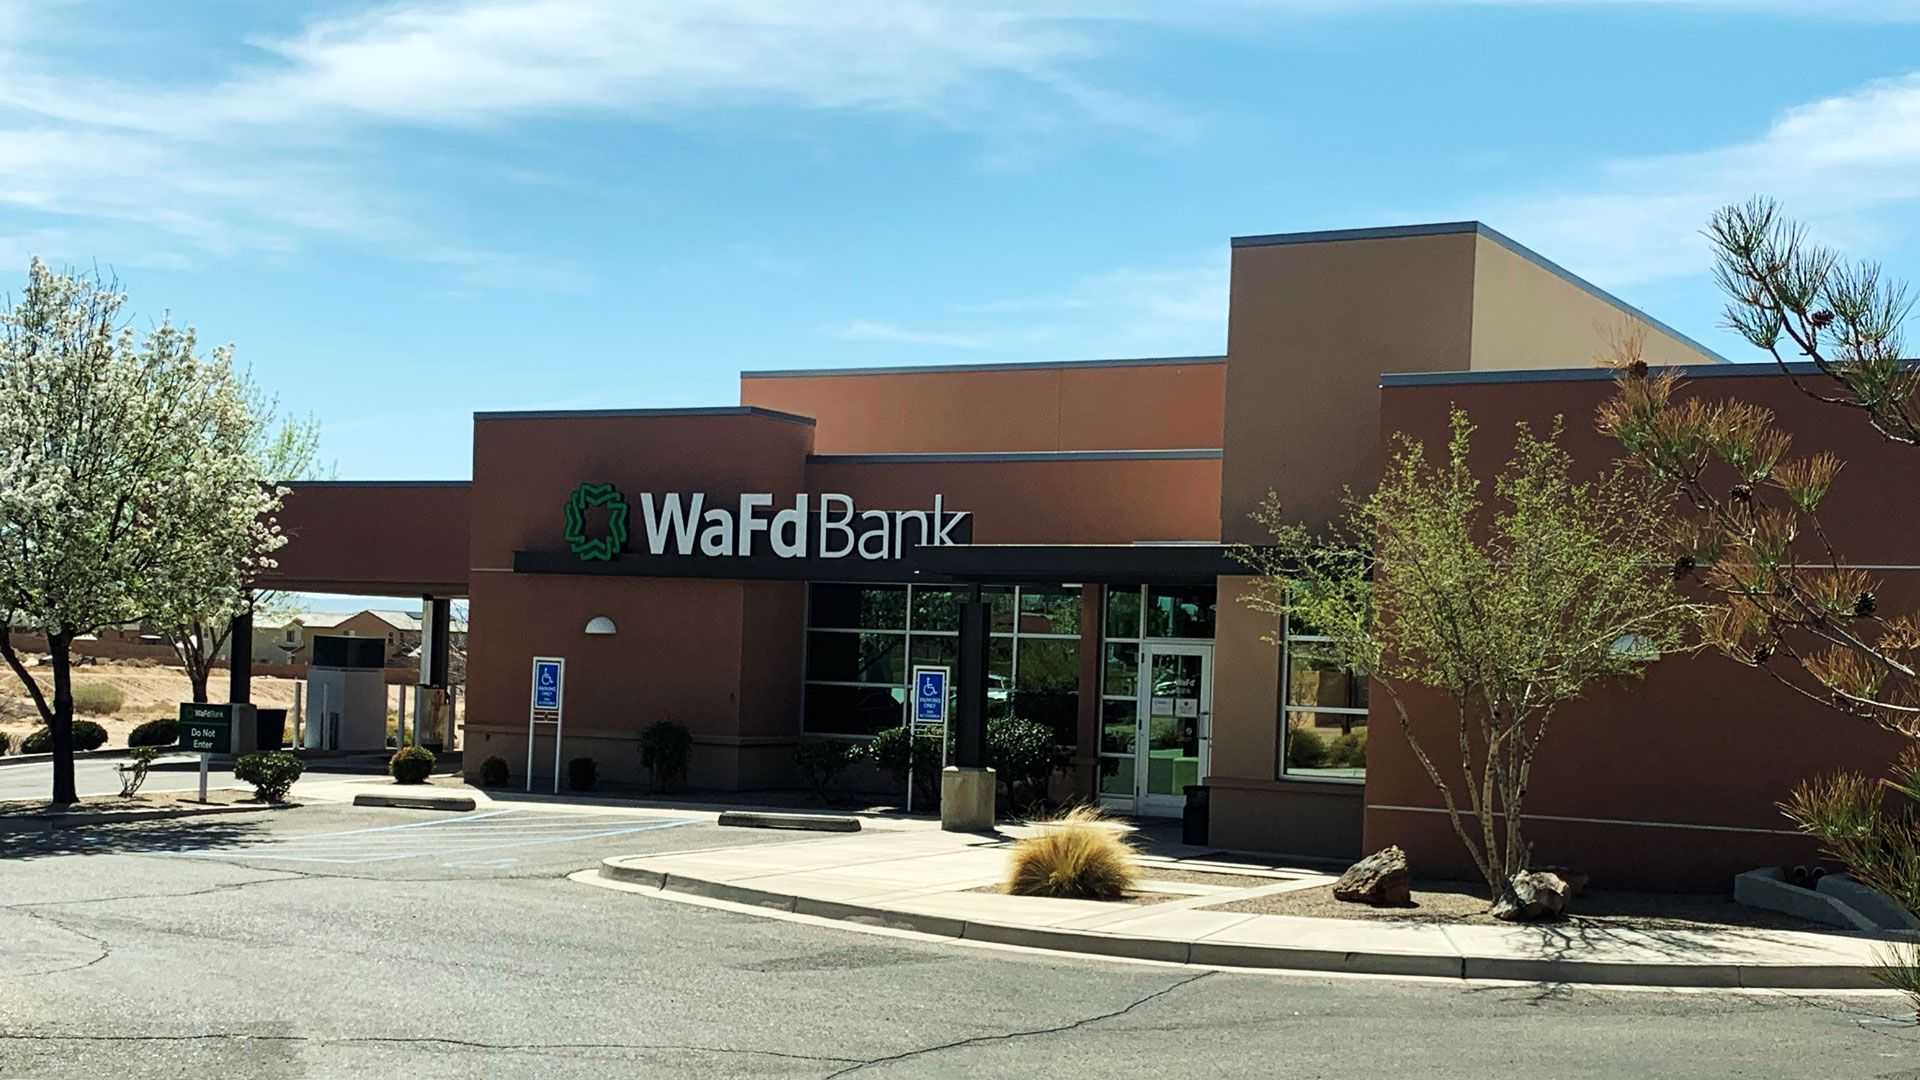 WaFd Bank in Rio Rancho, NewMexico #1264 - Washington Federal.